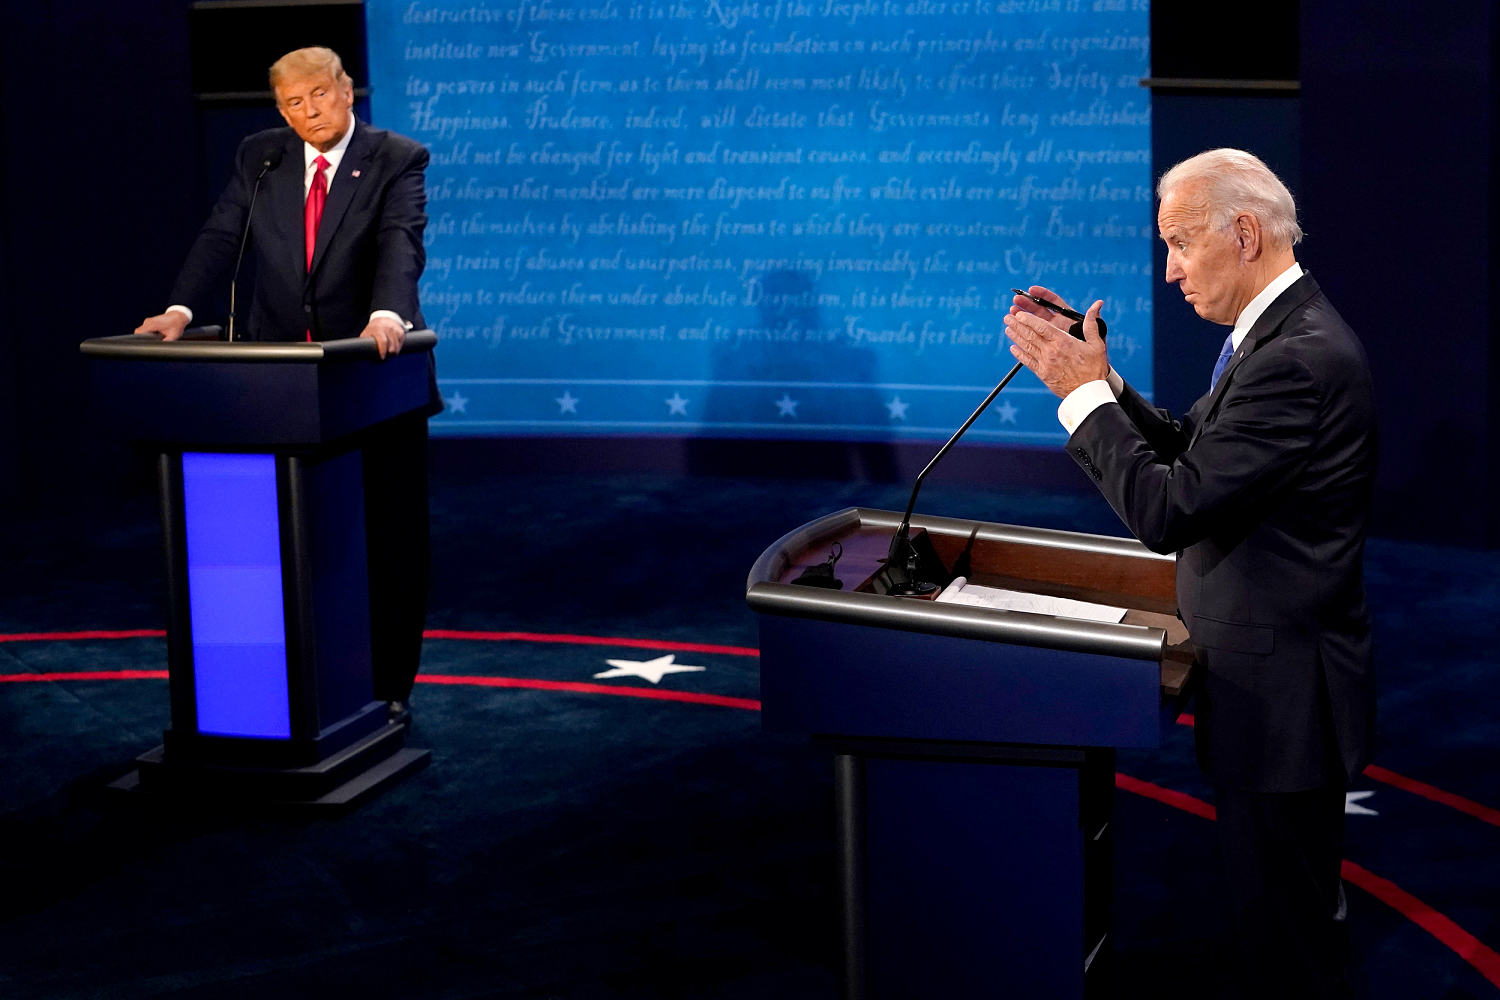 Live audiences don’t belong in a presidential debate